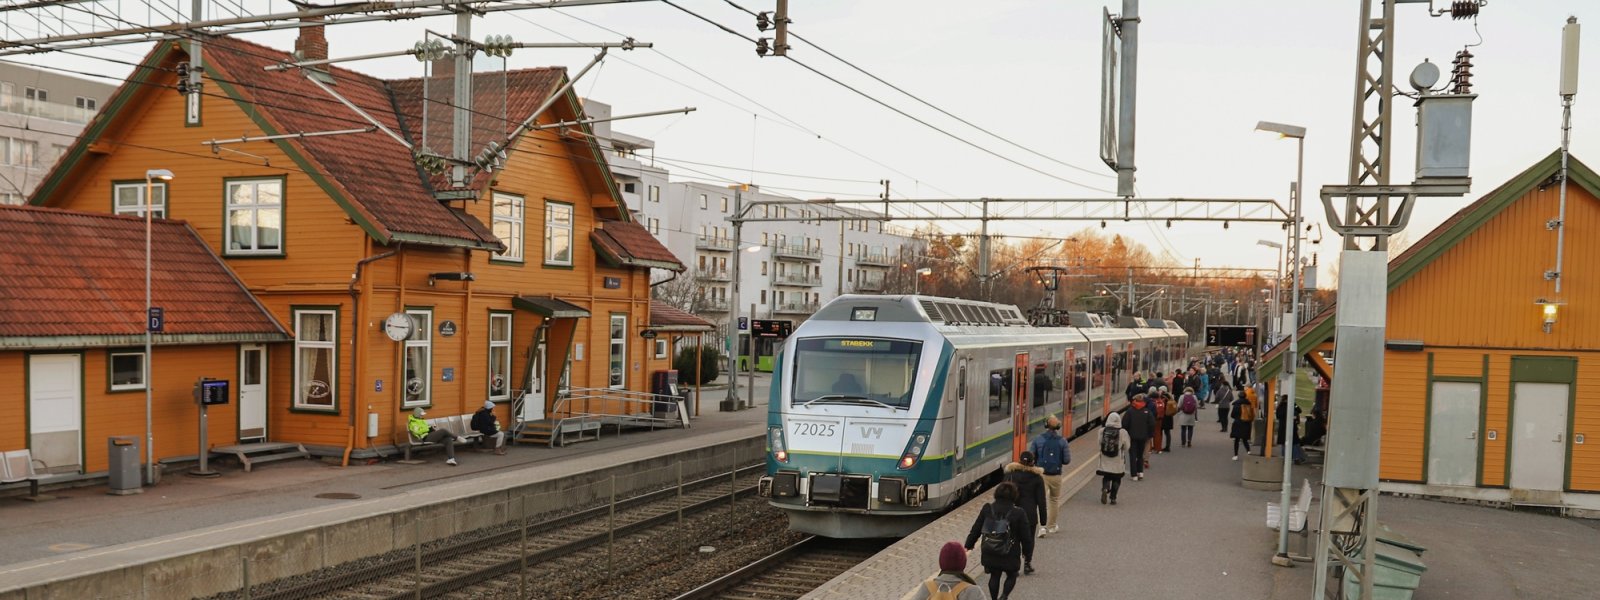 2021 Stasjon med tog - Ås stasjon